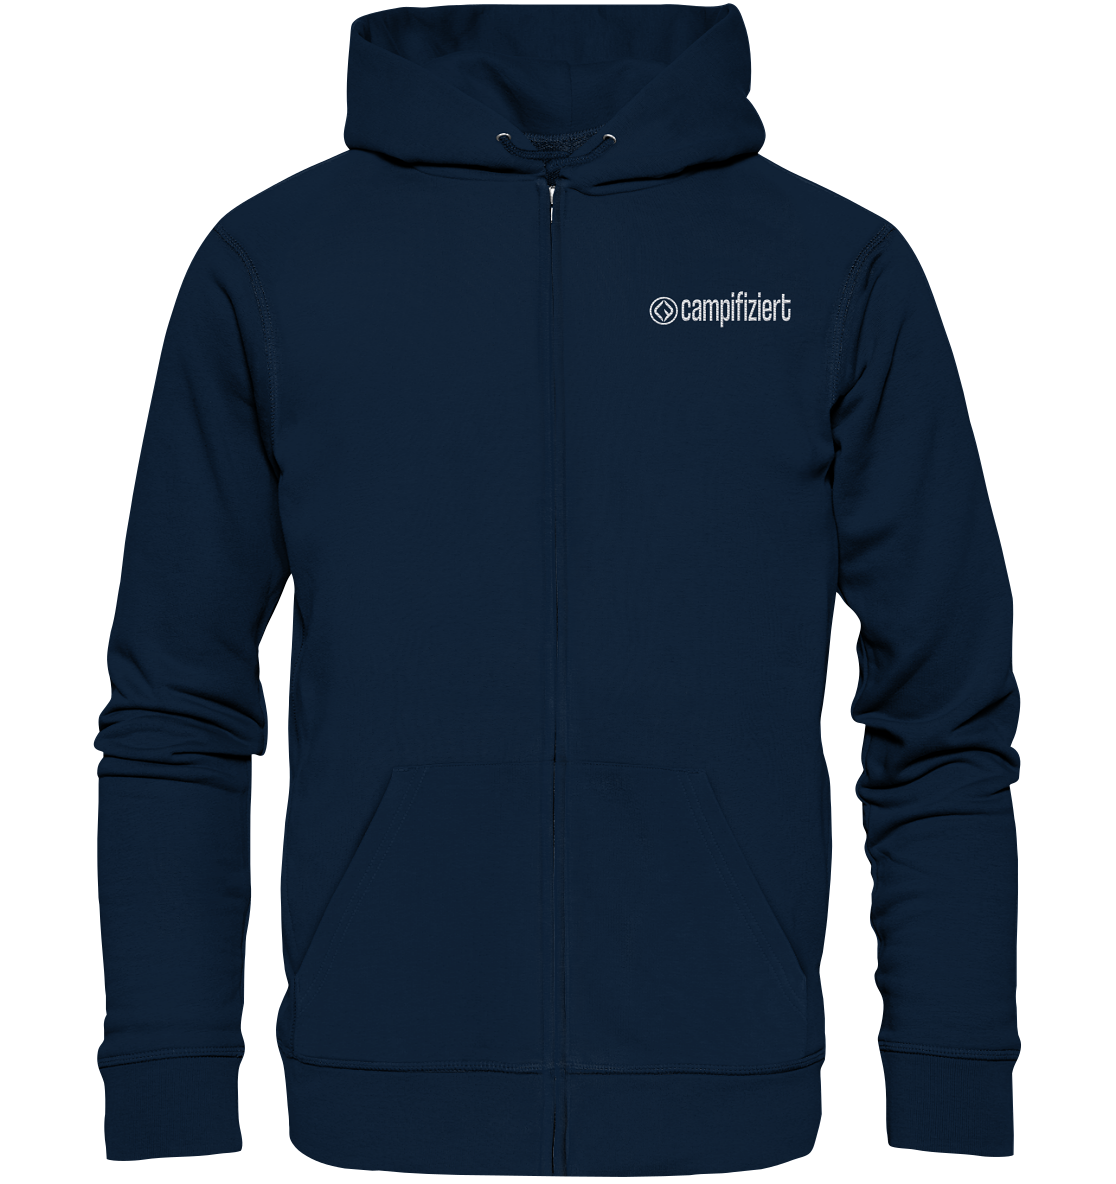 campifiziert® Logo gestickt - Organic Zipper (Stick) - Unisex